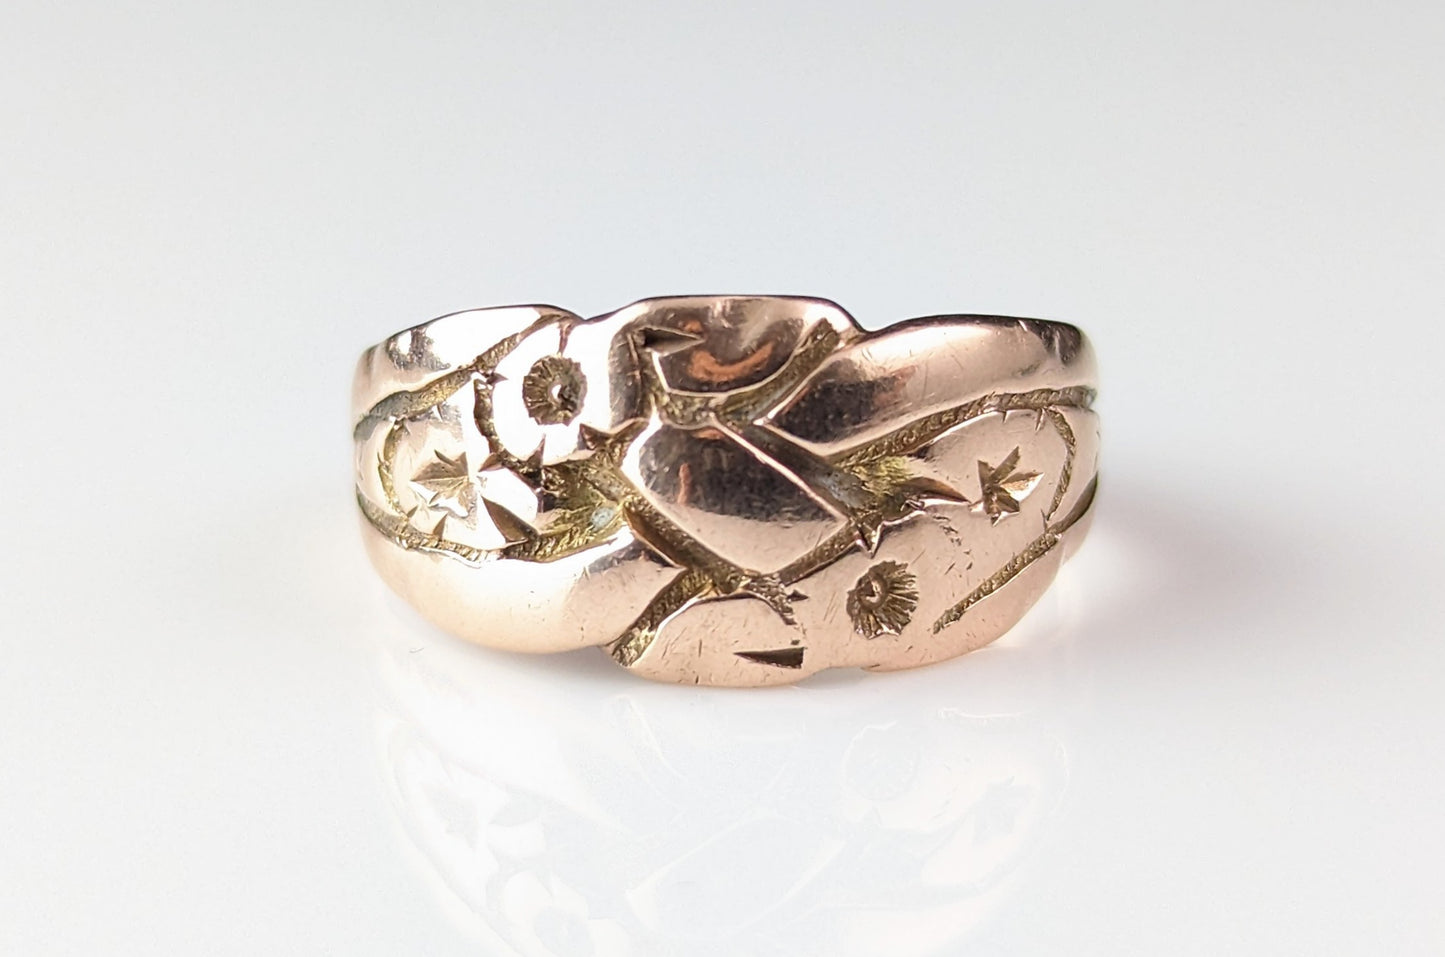 Antique 9k rose gold engraved band ring, Art Deco